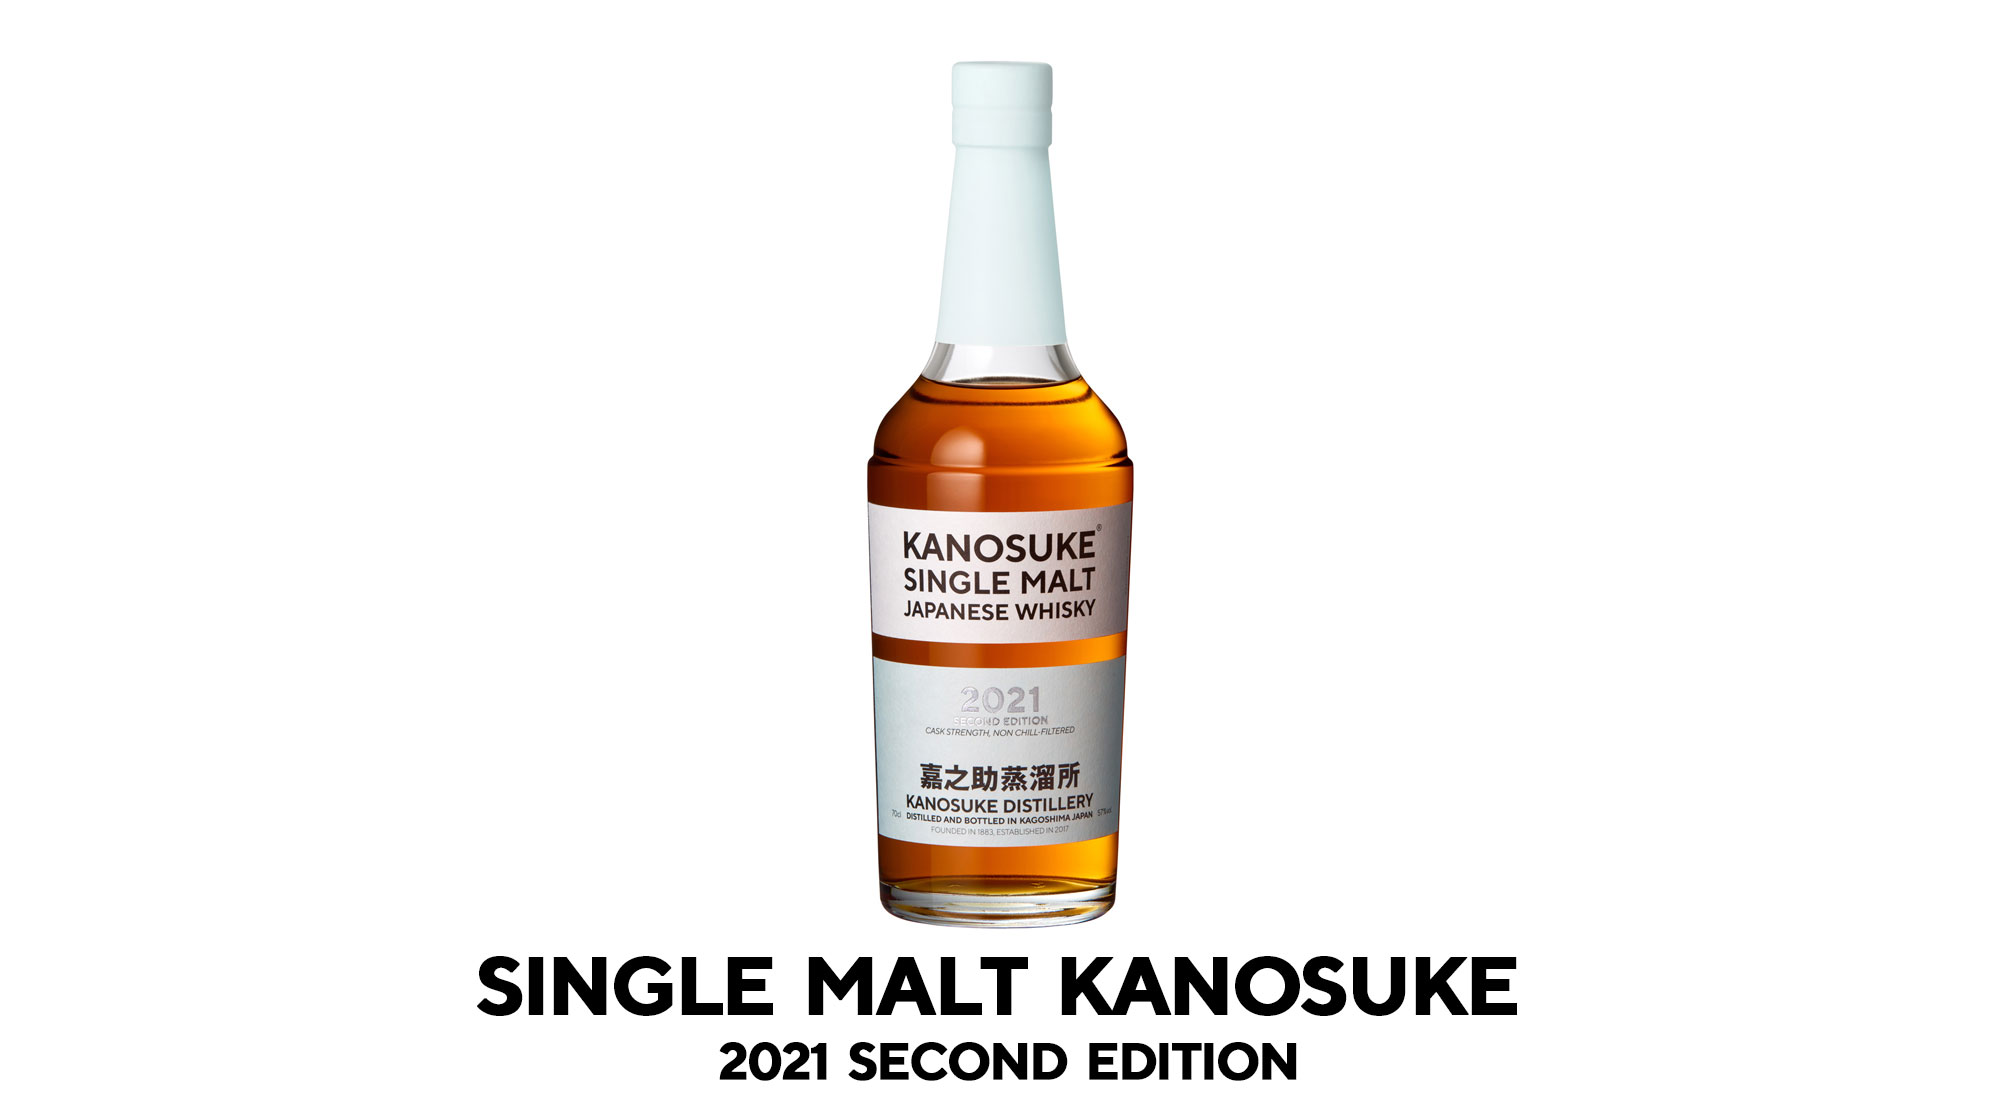 SINGLE MALT KANOSUKE 2021 SECOND EDITION